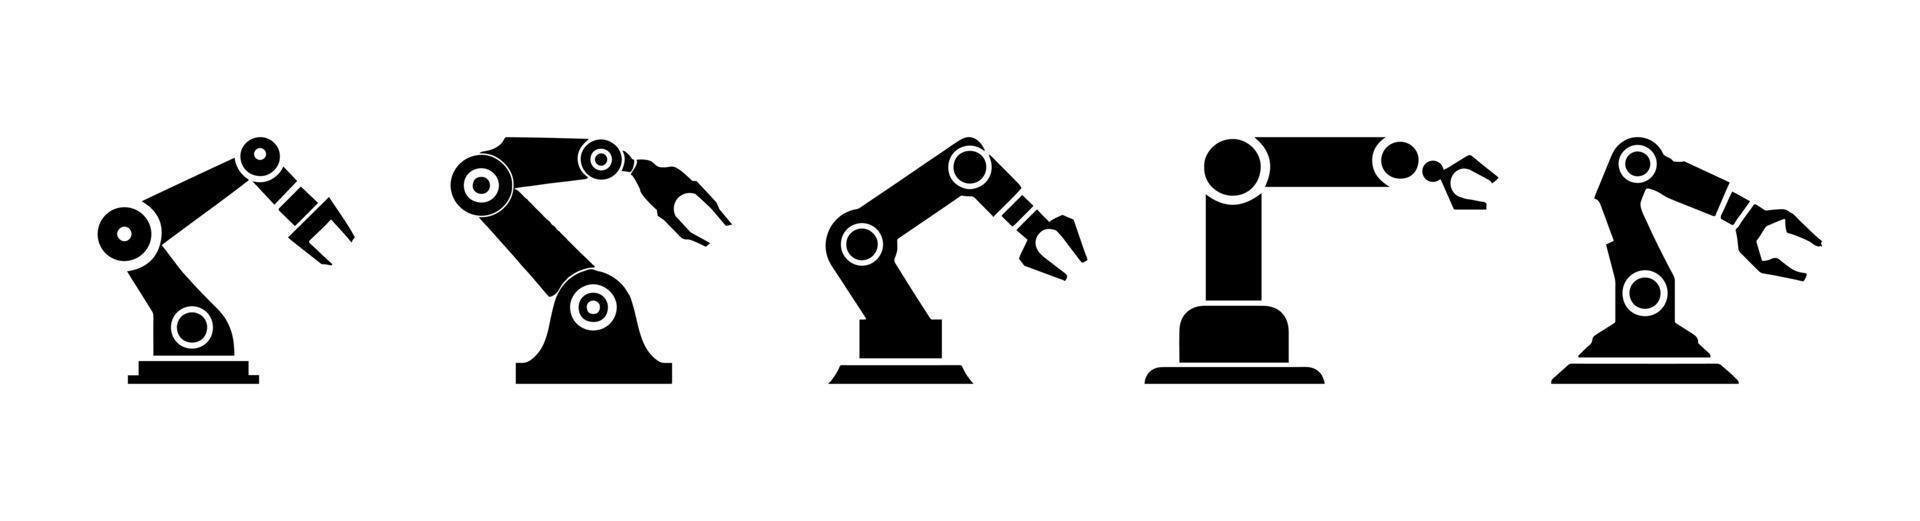 ícone de símbolo de silhueta de manipulador de mão robótica. vetor